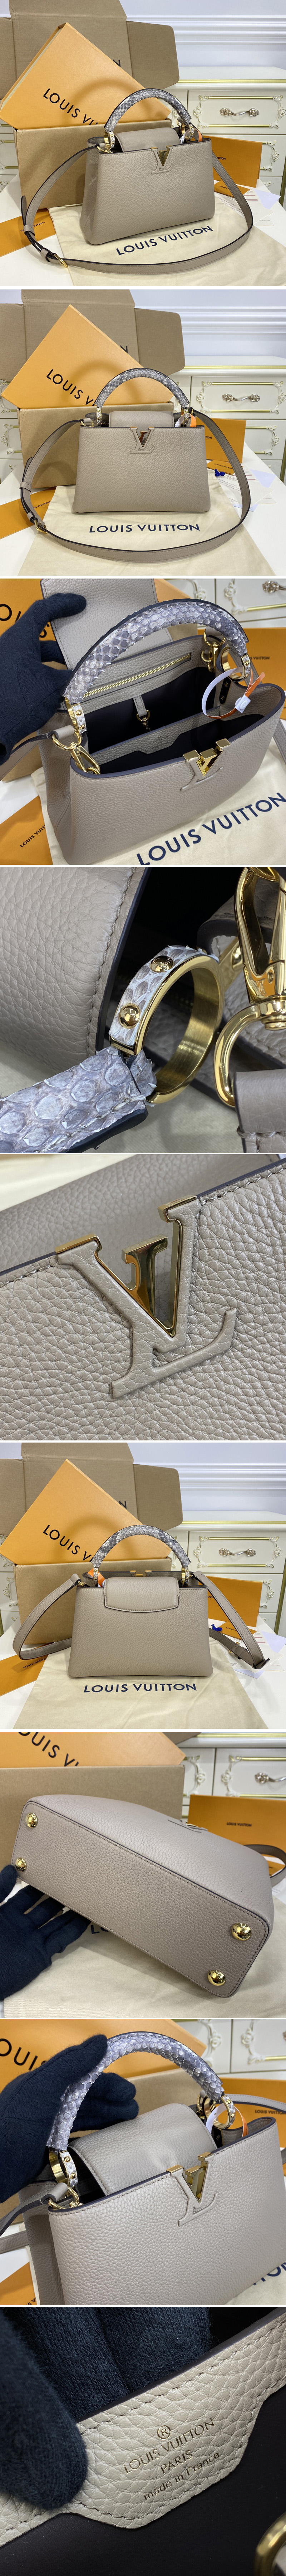 Louis Vuitton CAPUCINES Capucines mini (N98477)